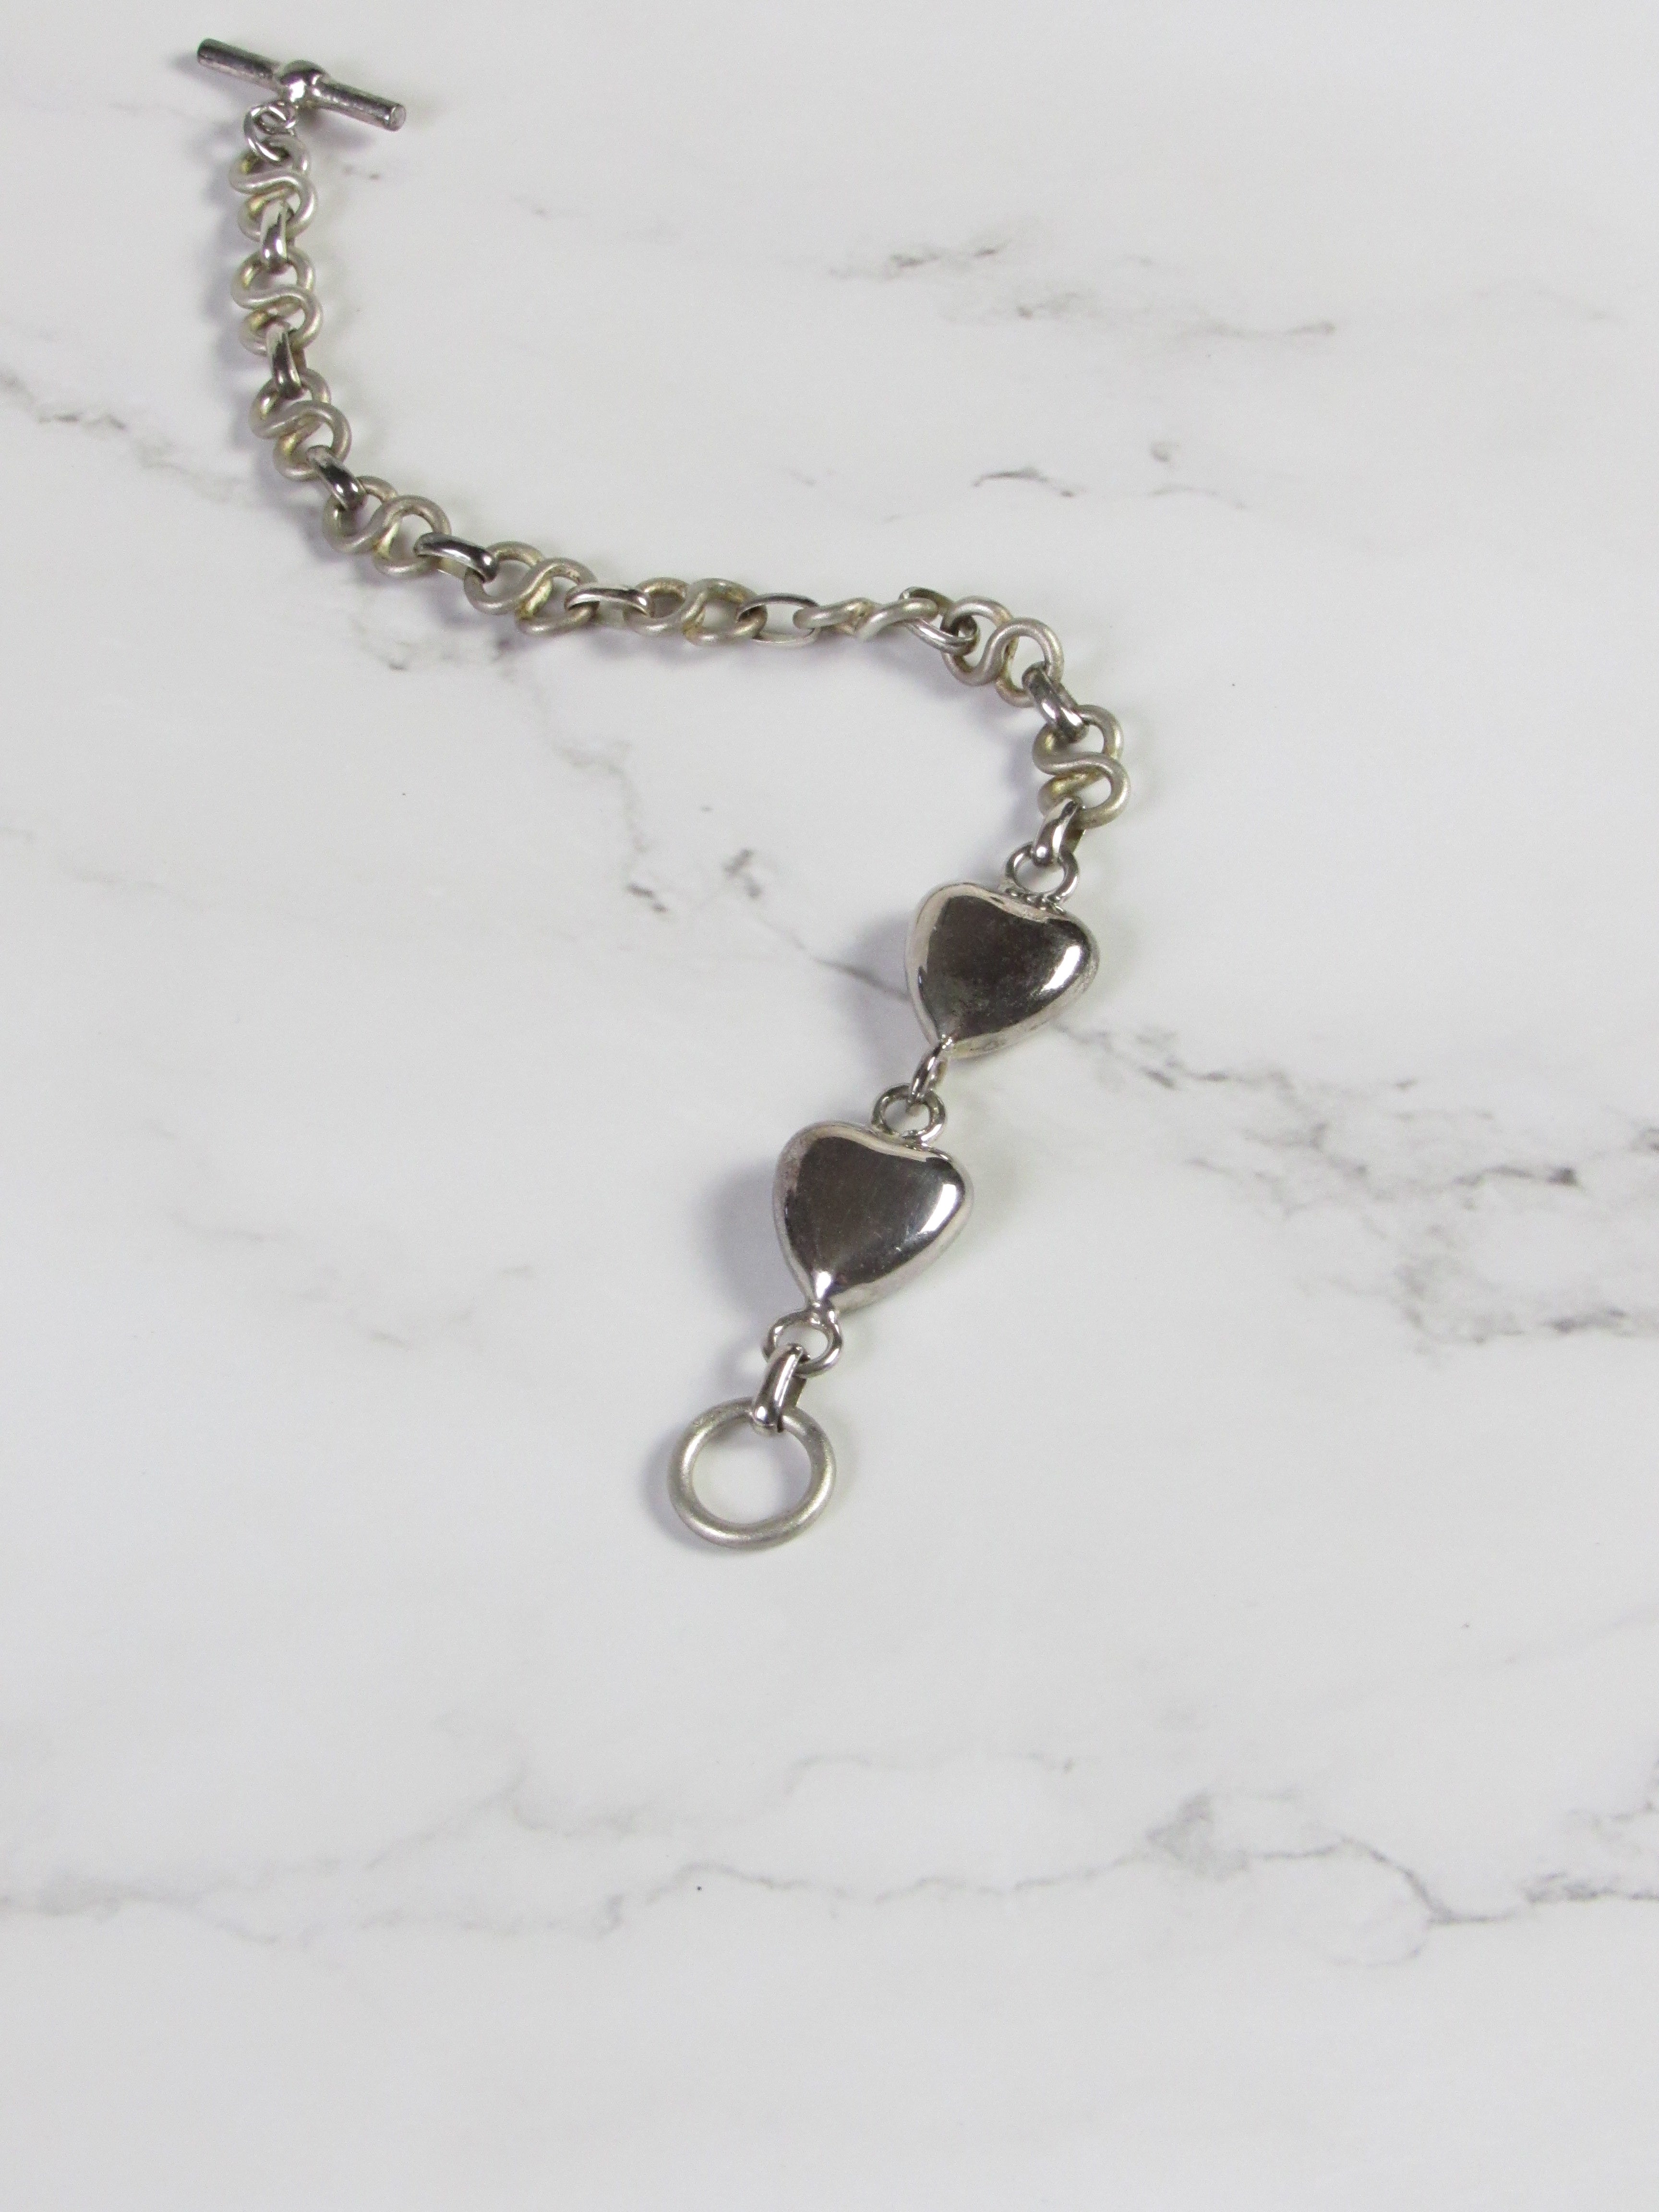 Vintage Hearts Linked Silver Charm Bracelet